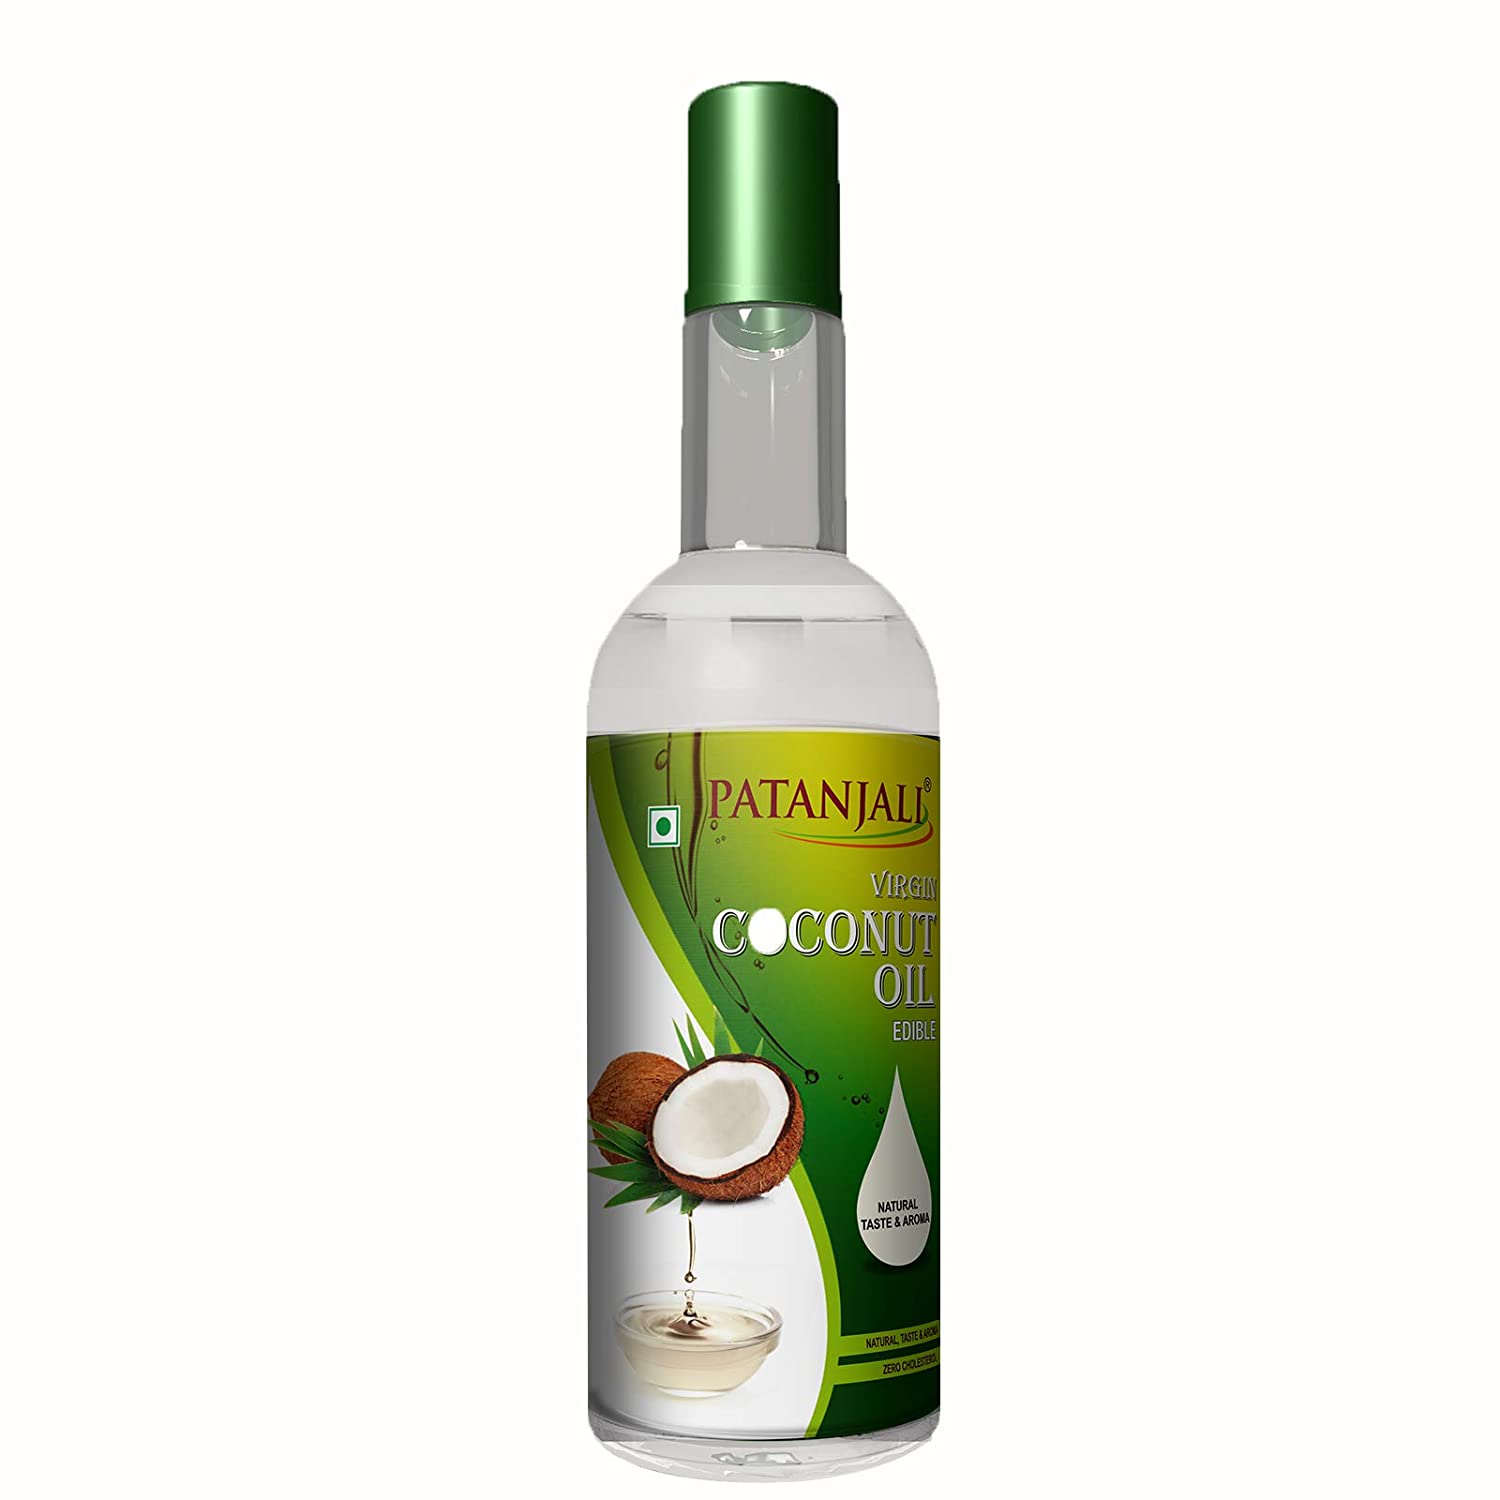 Patanjali Virgin Coconut Oil - 250 ml